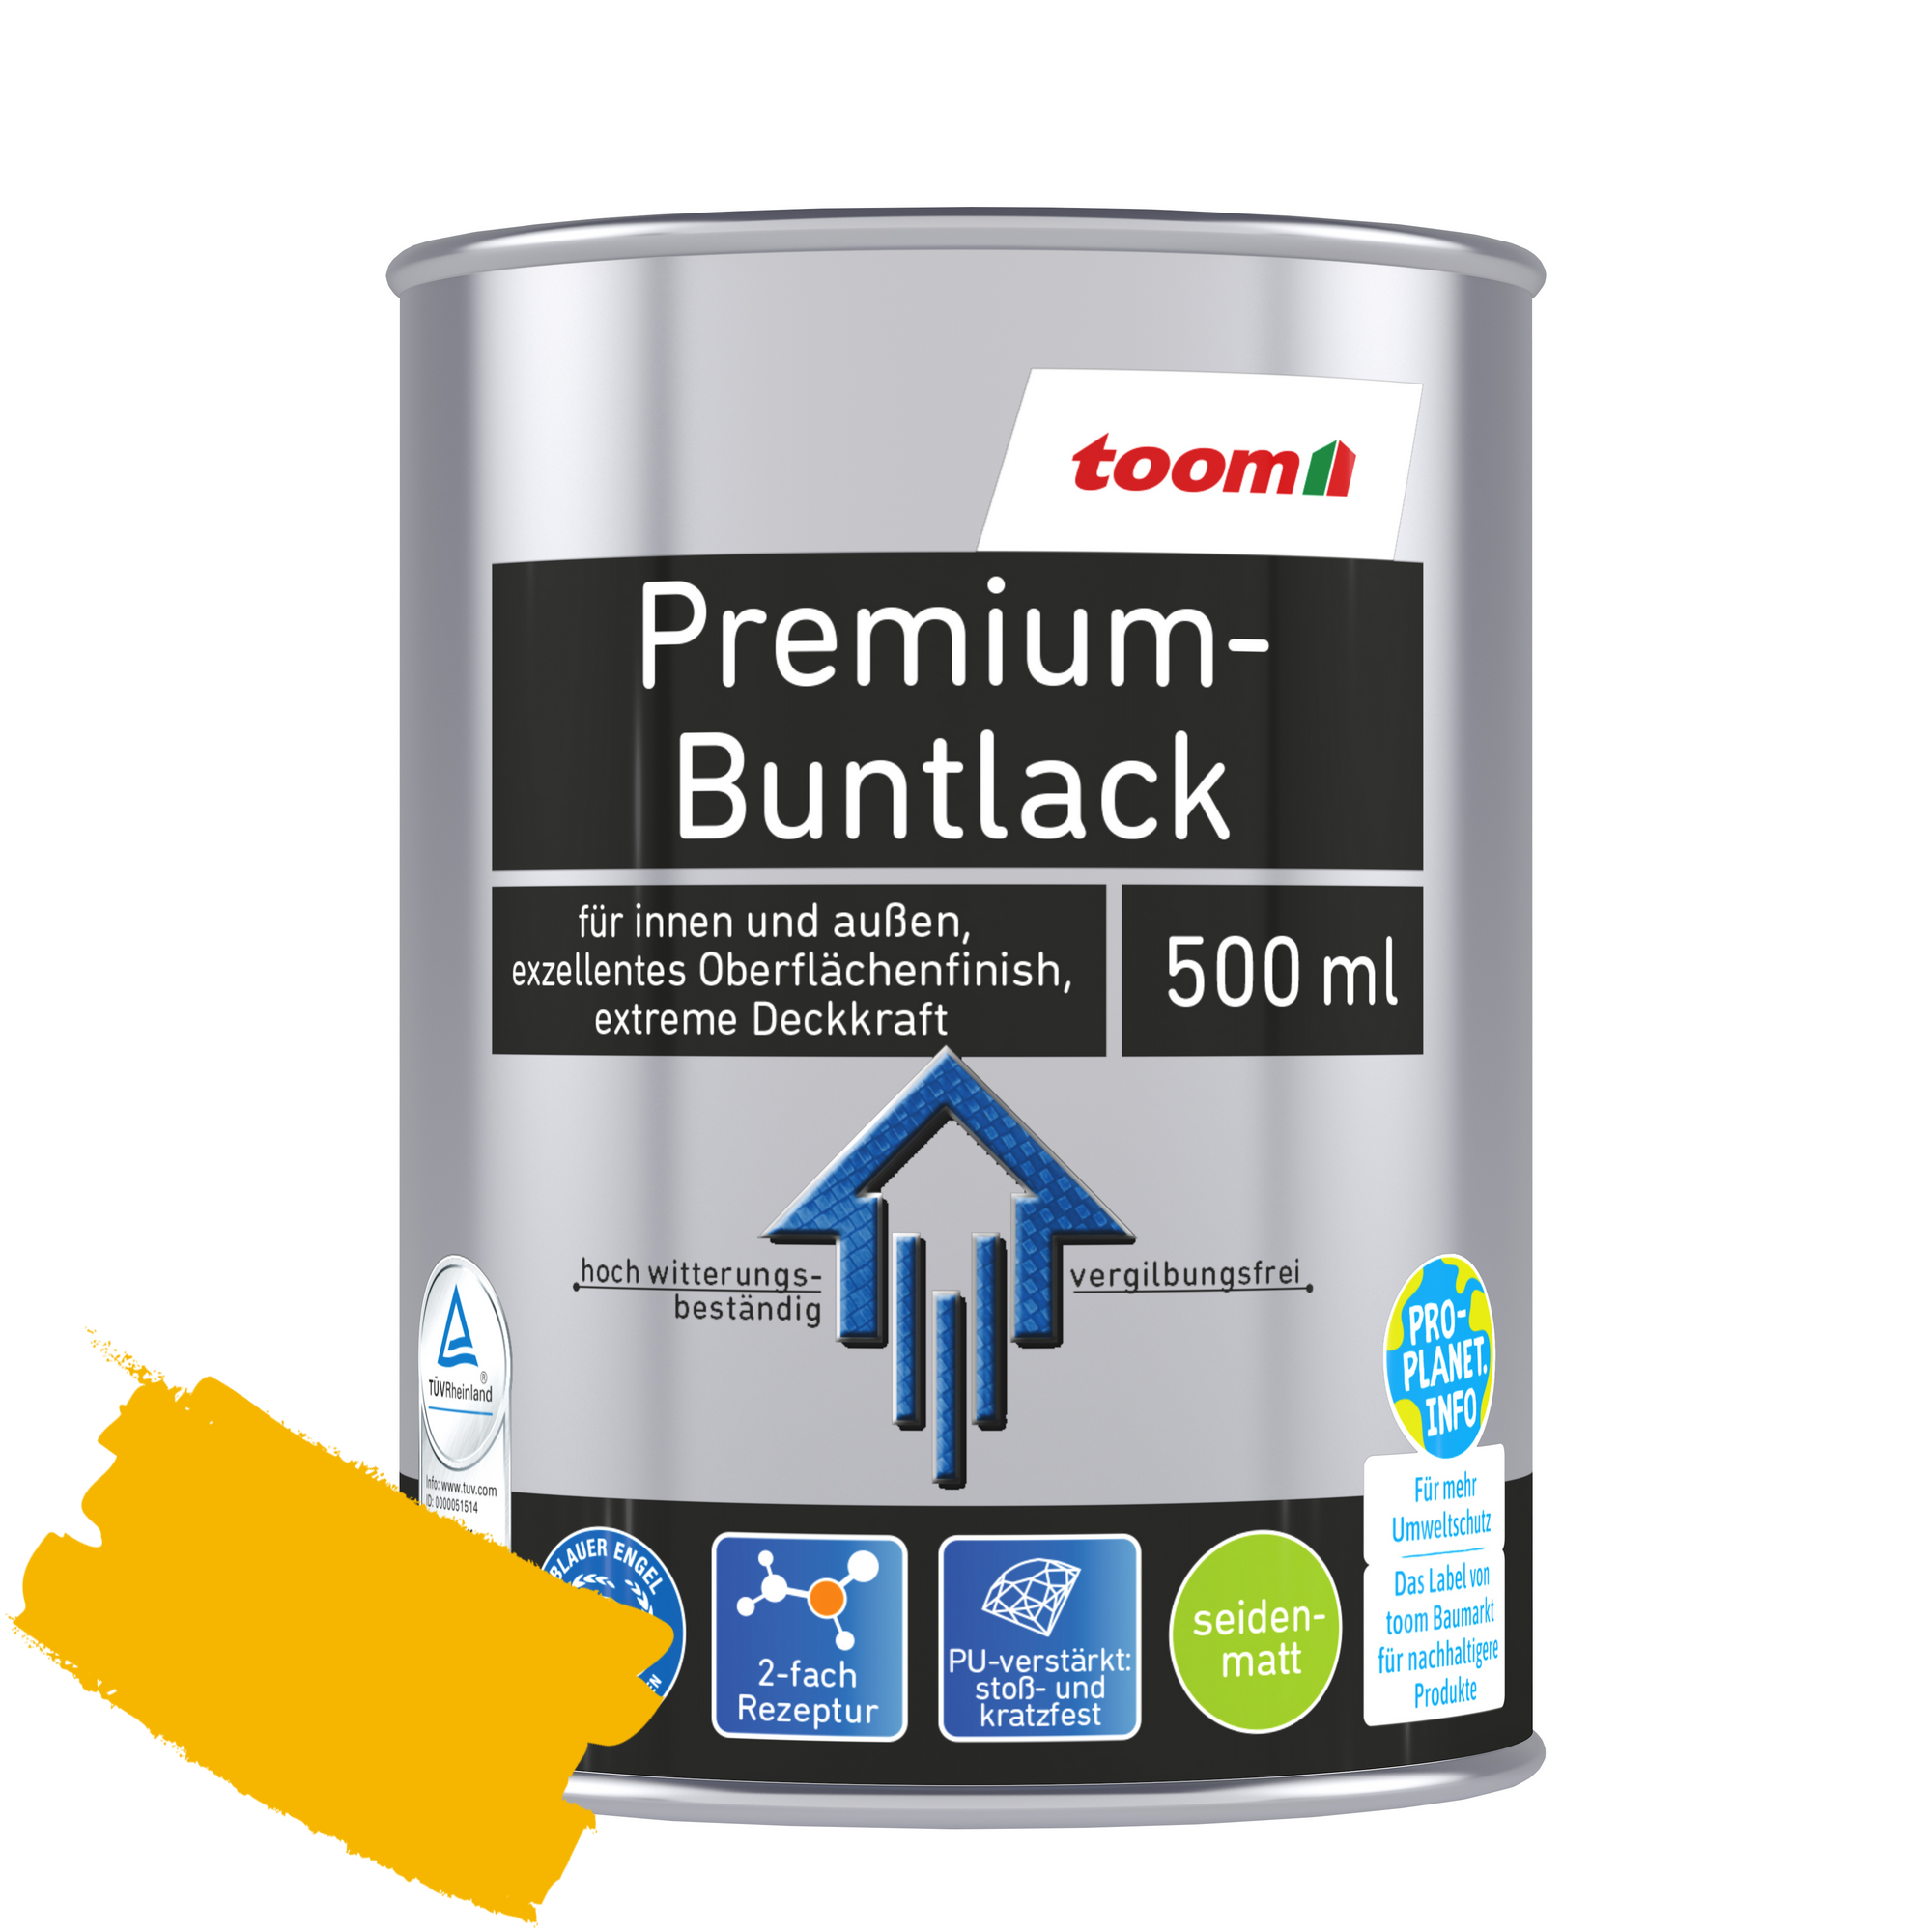 Premium-Buntlack rapsgelb seidenmatt 500 ml + product picture